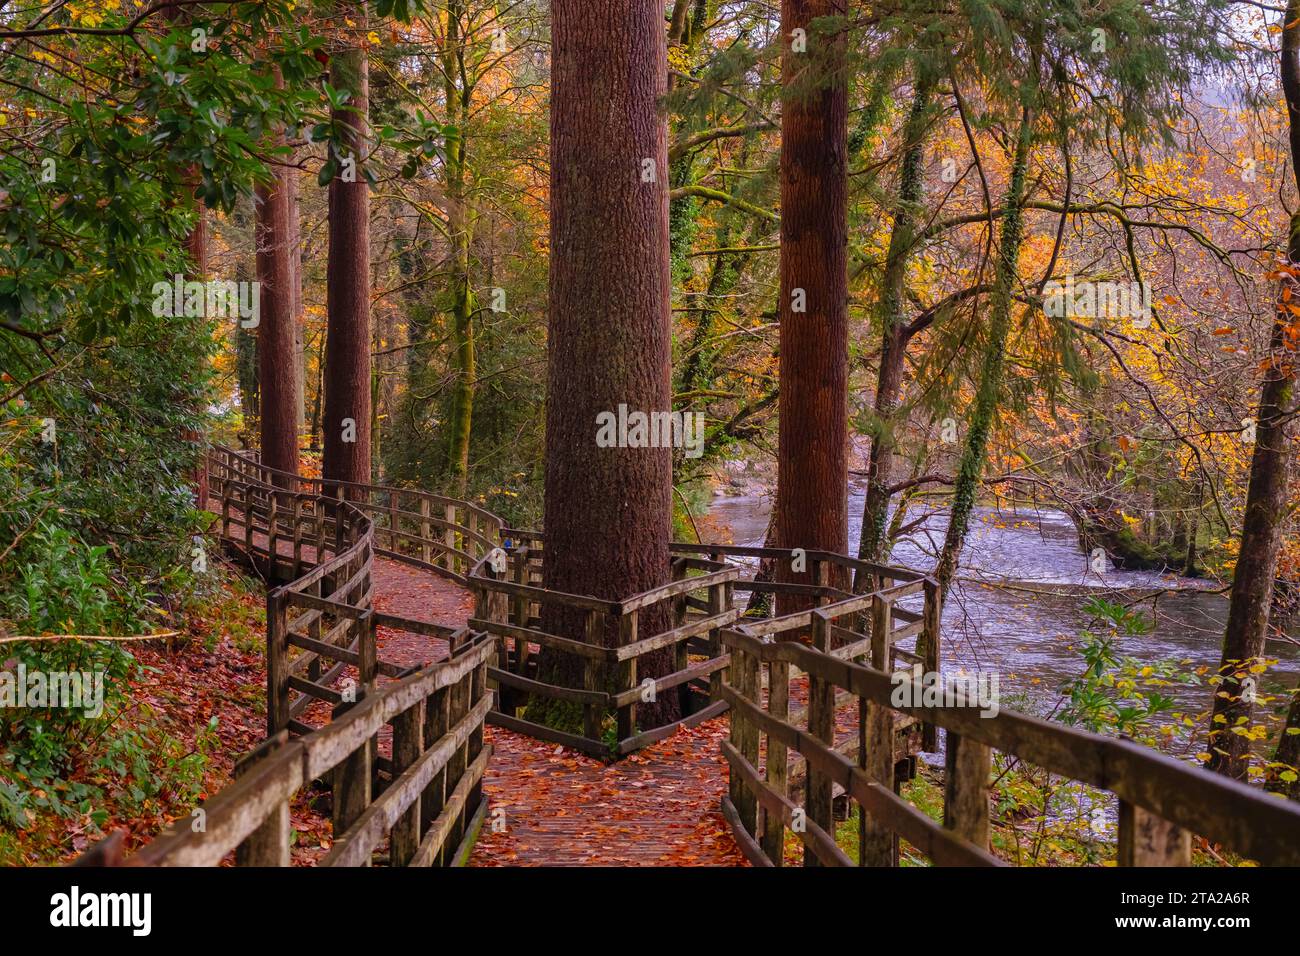 Coed Tan Dinas Walk. Sentier de promenade à travers les bois du parc forestier Gwydir à côté de la rivière Afon Llugwy en automne. Betws-y-Coed, Conwy, pays de Galles, Royaume-Uni, Grande-Bretagne Banque D'Images